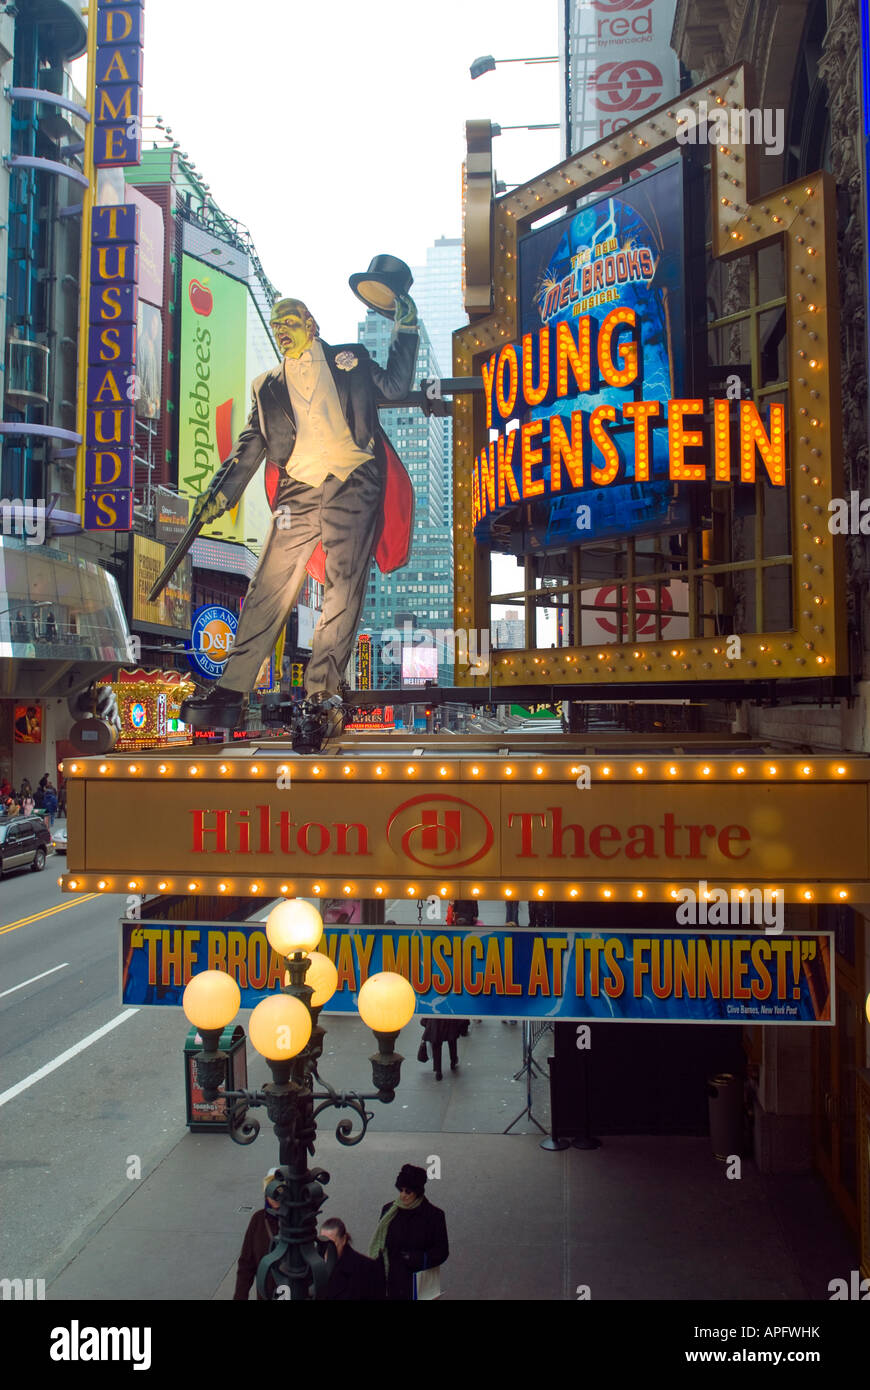 La carpa para el nuevo musical de Mel Brooks de Frankenstein joven es visto en el Hilton Theatre en la 42st en Times Square en la ciudad de Nueva York Foto de stock